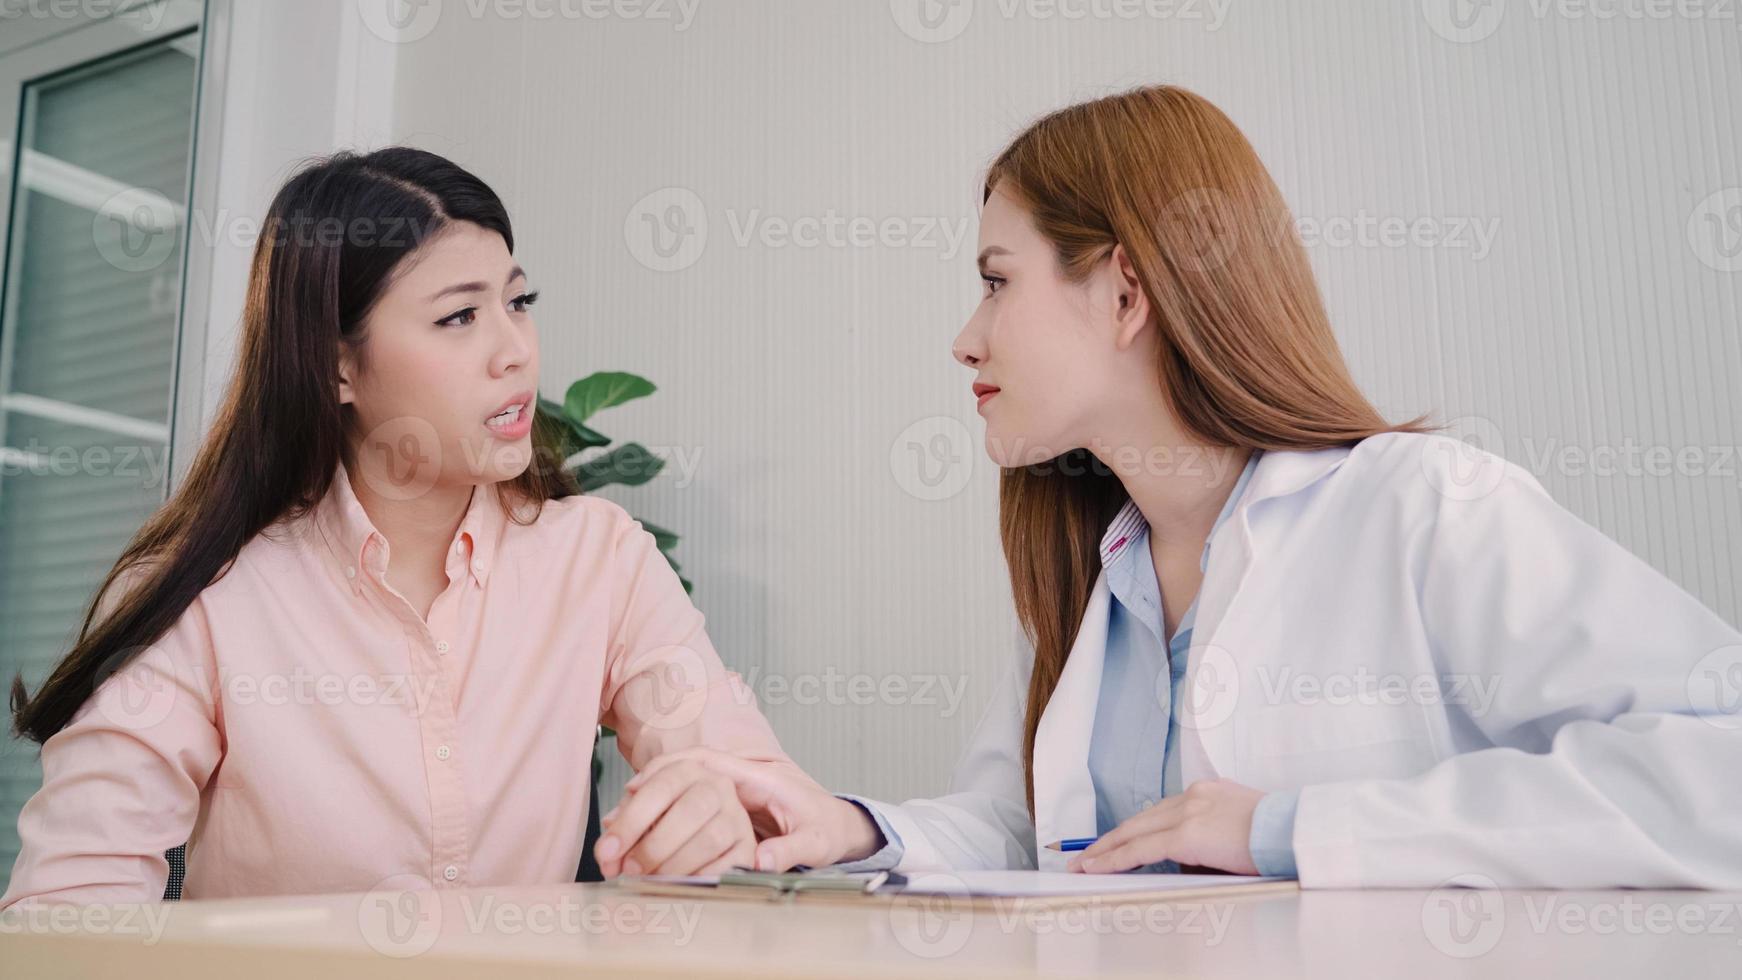 médecin parlant à un patient adolescent mécontent dans la salle d'examen. femme asiatique médecin encouragement et soutien au patient atteint de cancer après consultation et examen de la santé dans une clinique médicale ou un hôpital. photo